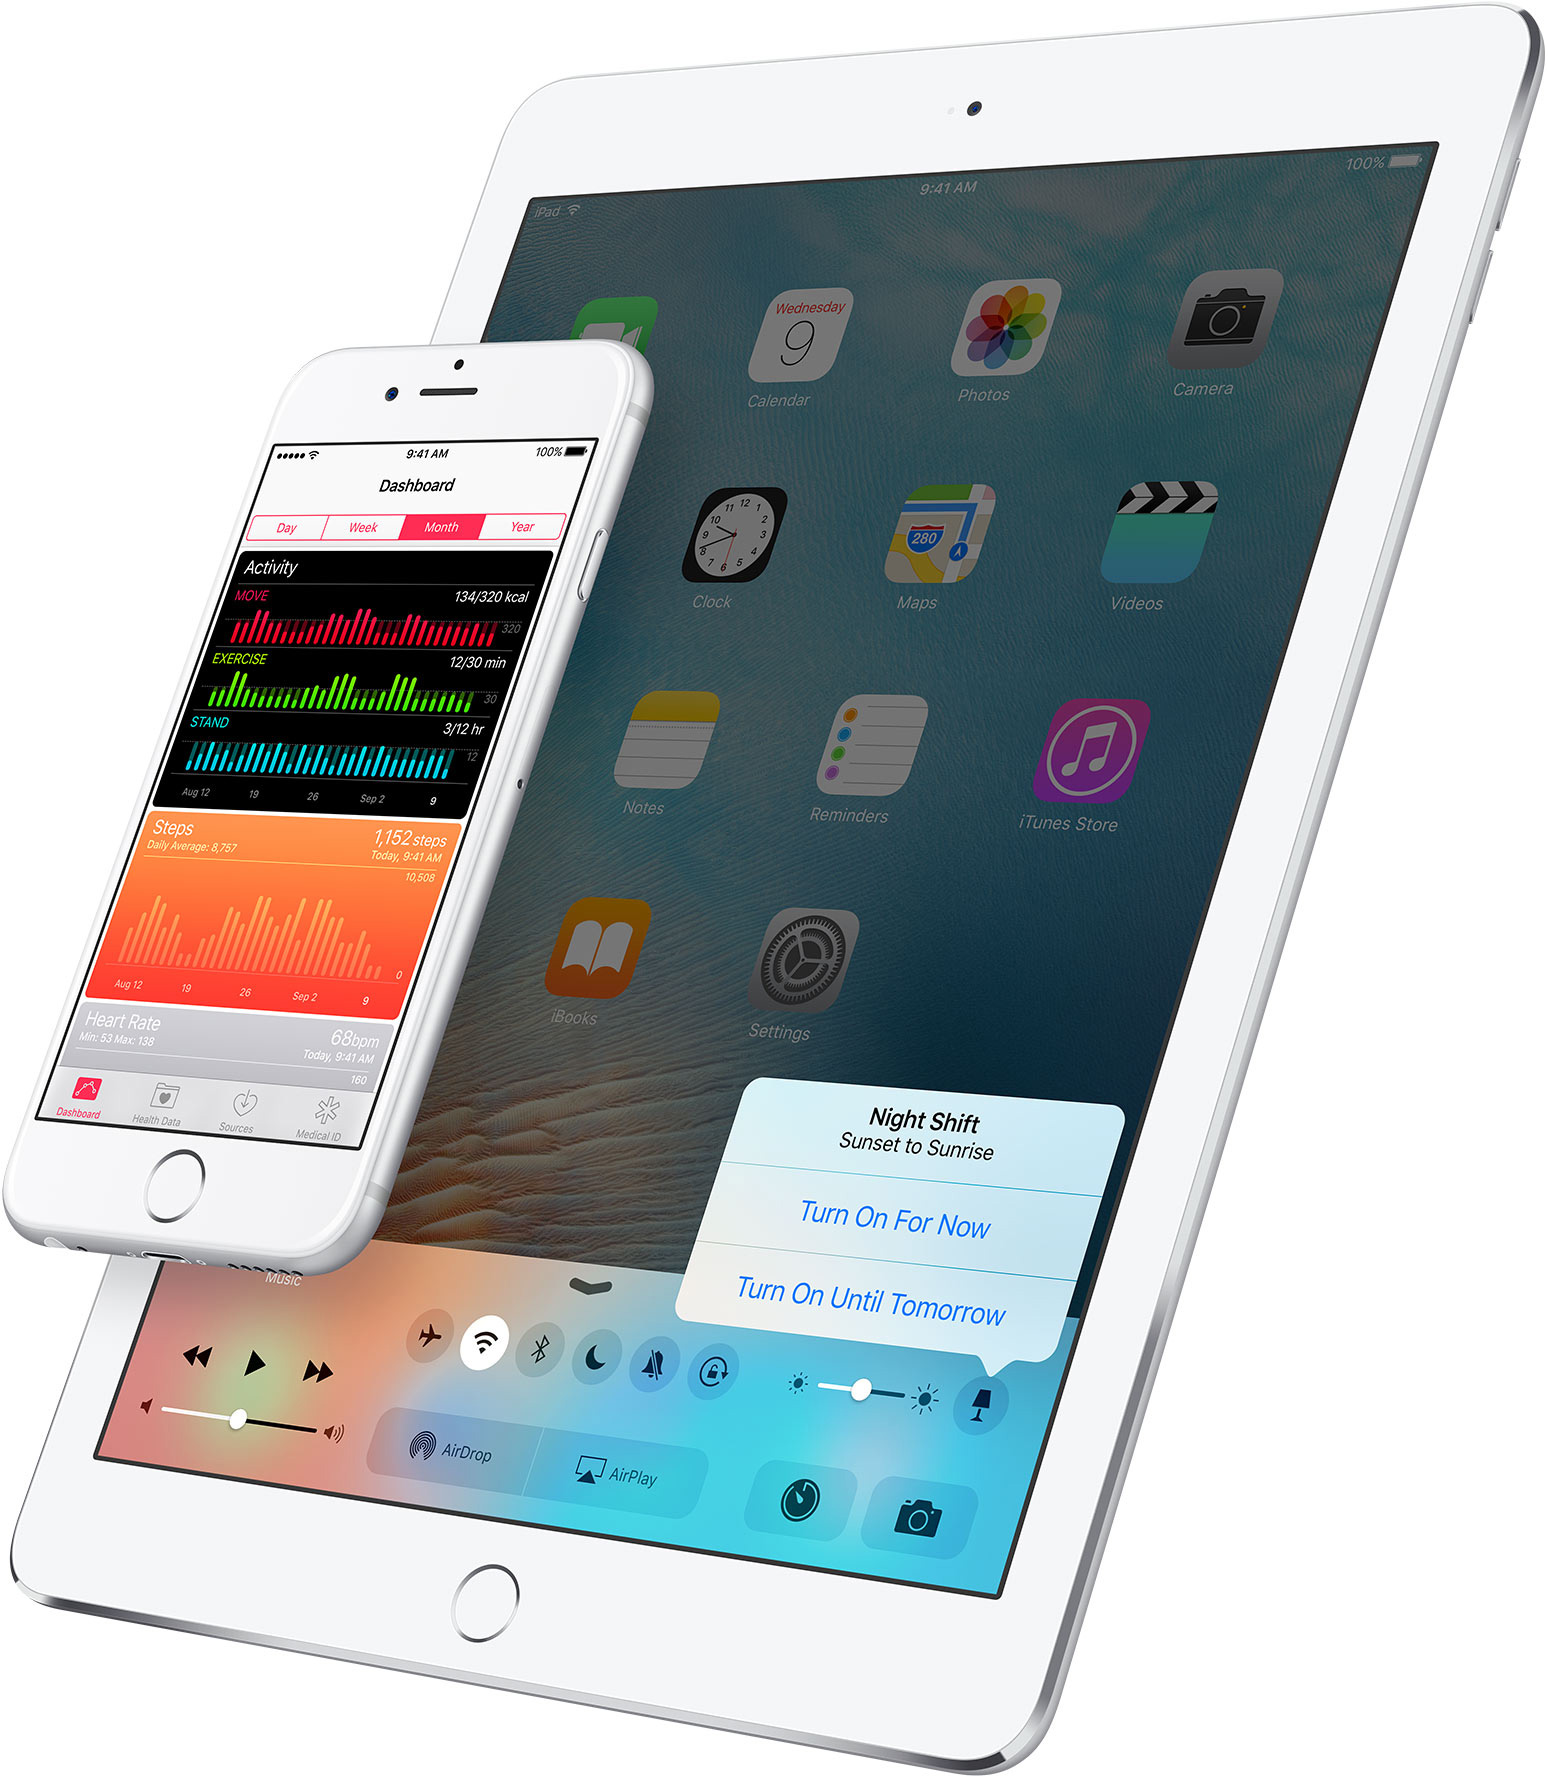 Night Shift na Central de Controle do iOS 9.3